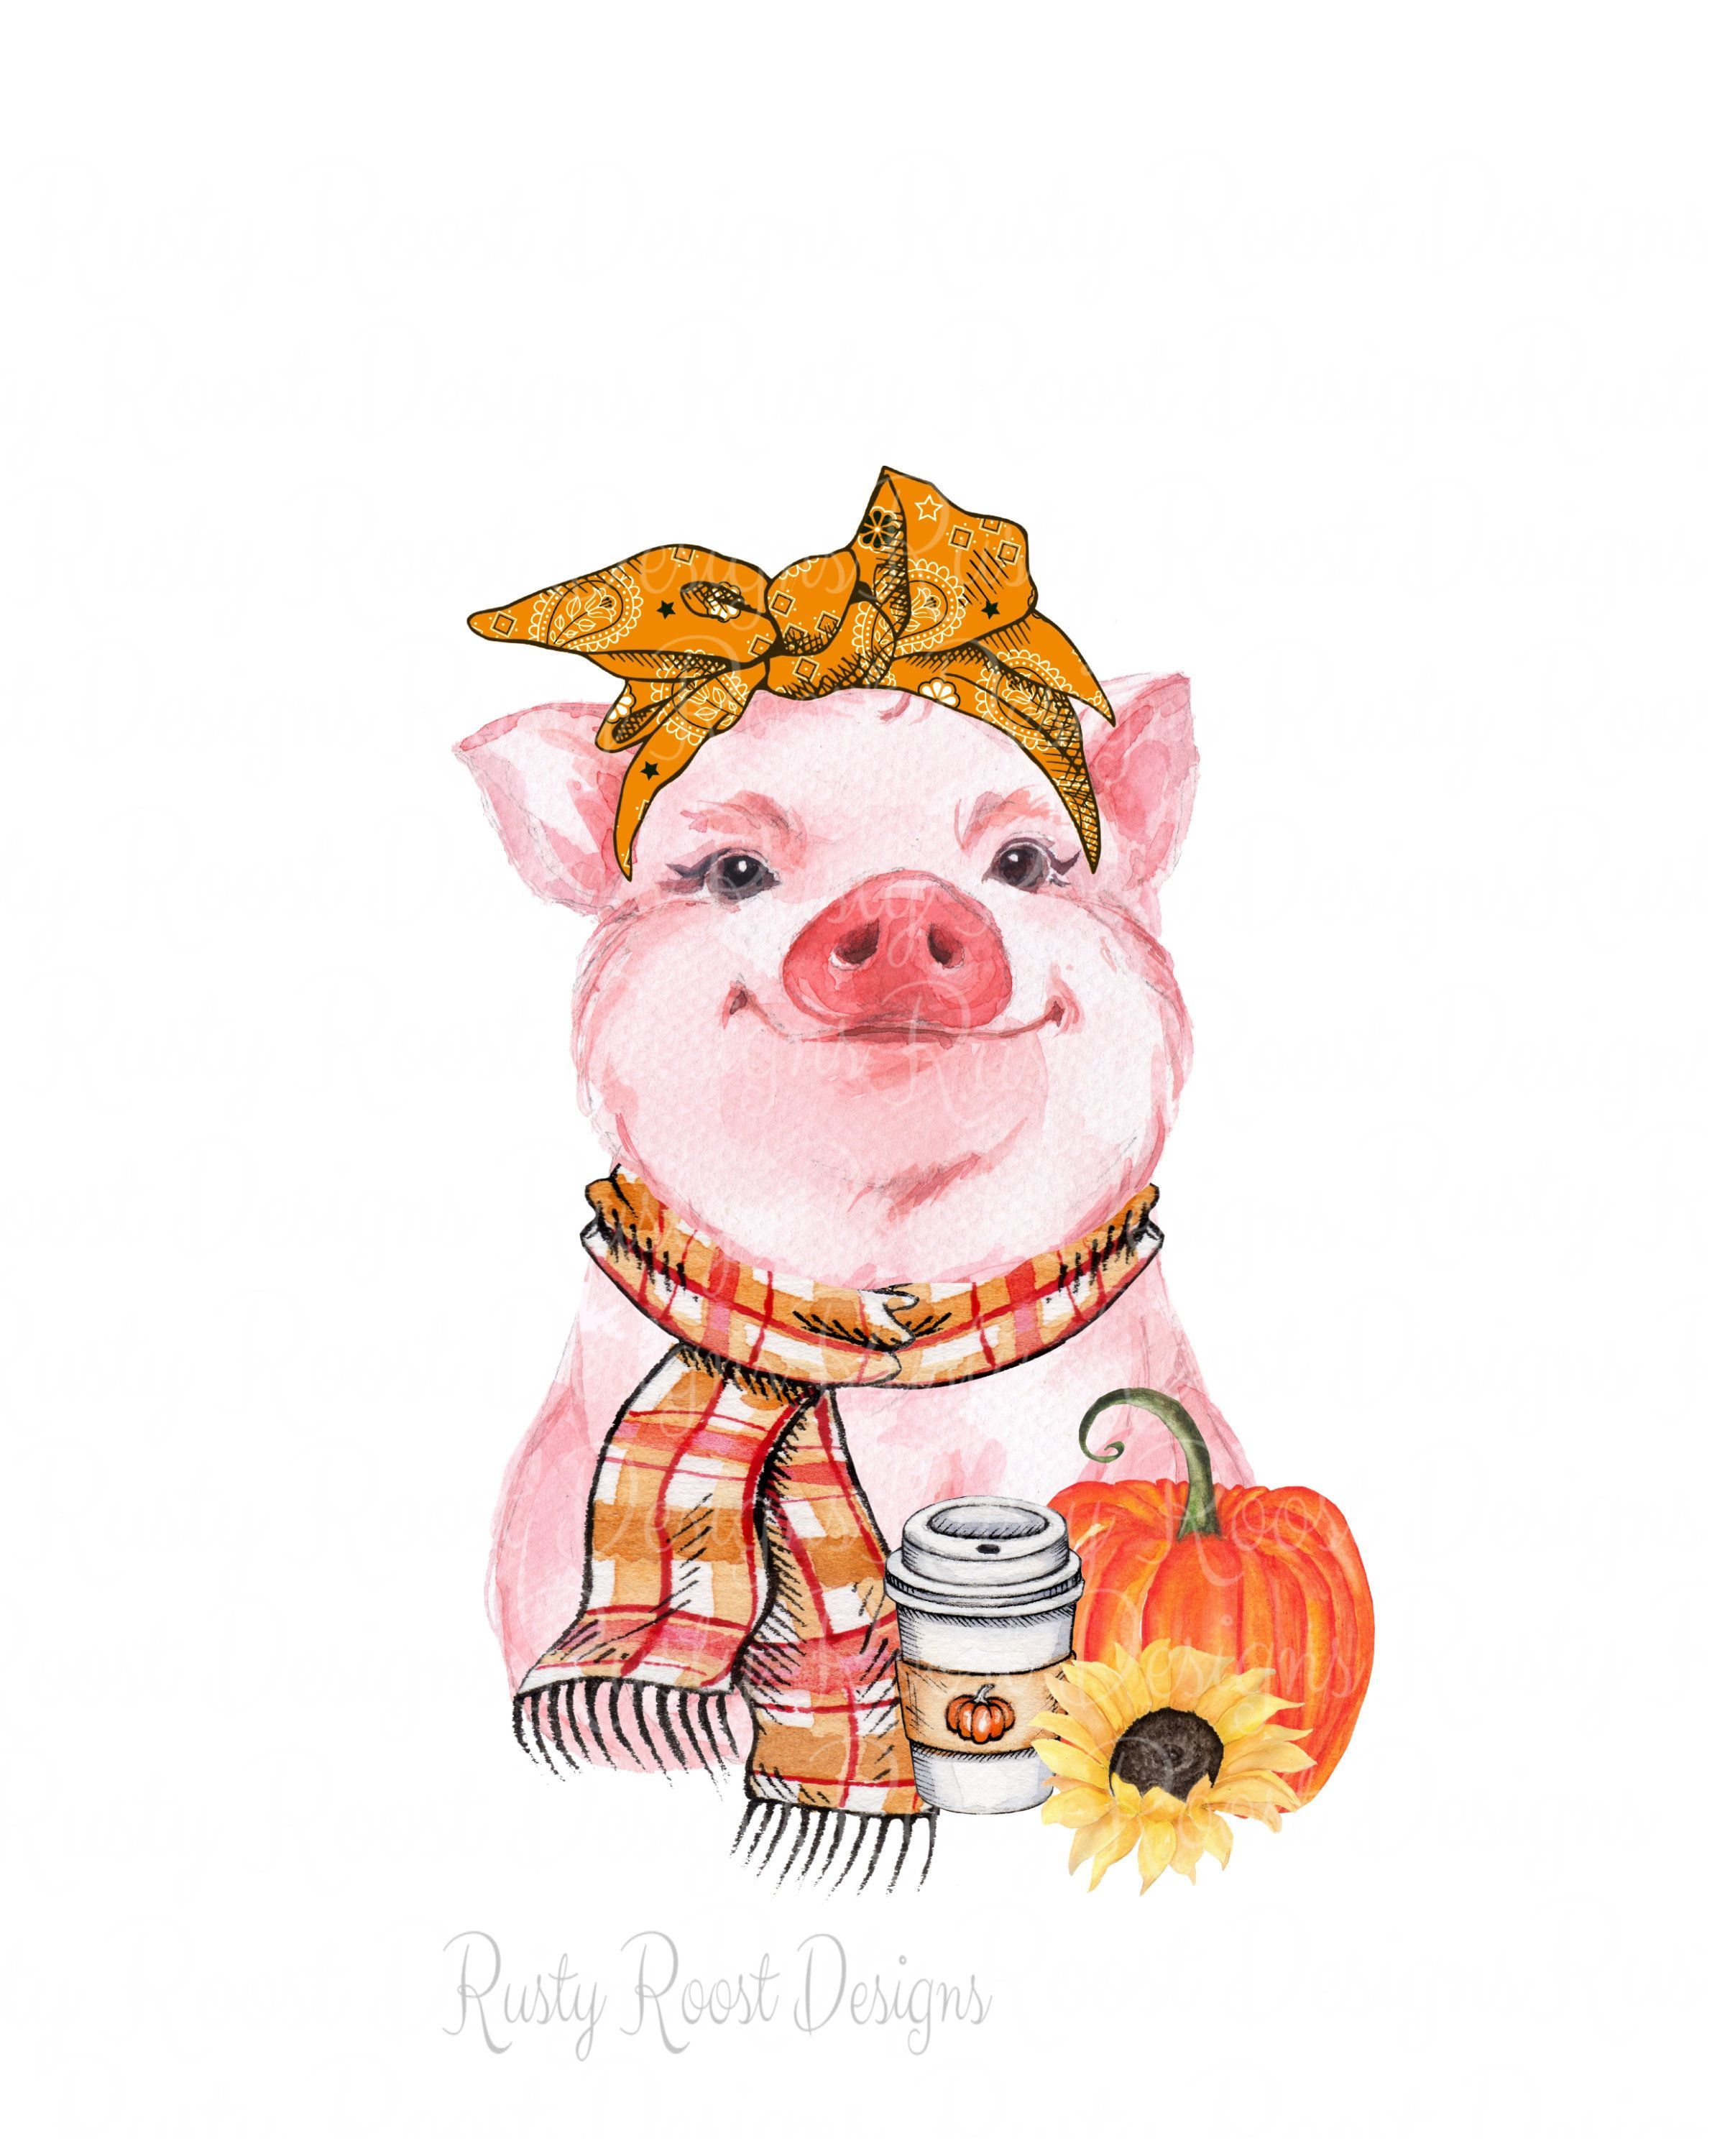 Fall pig pngfall sublimation designs downloadsdigital. Etsy. Pig illustration, Fall design, Cute wallpaper